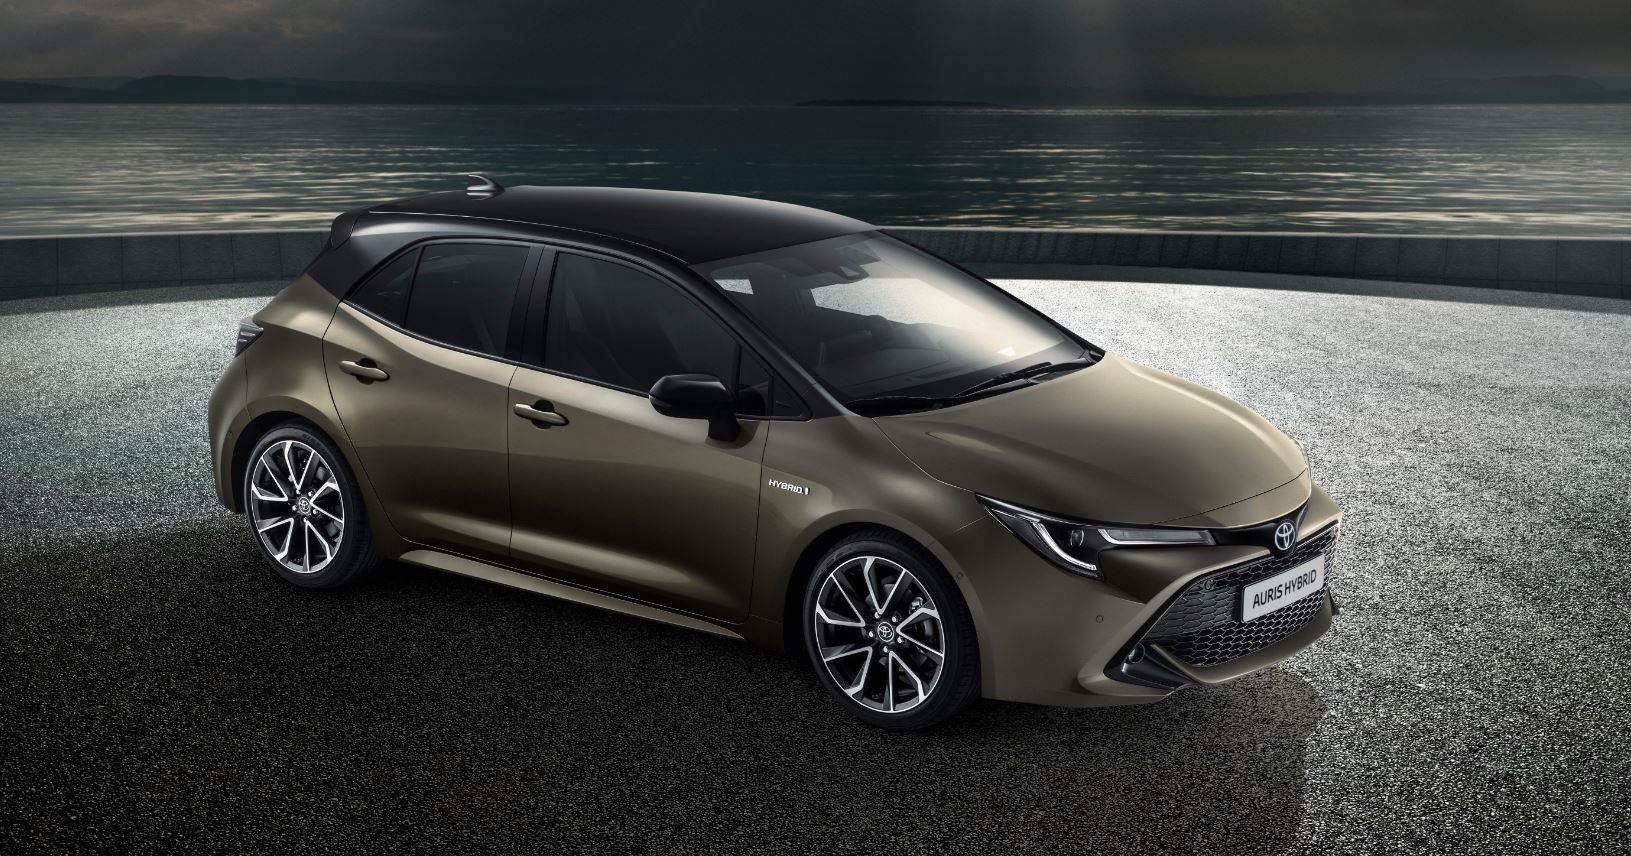 El Toyota Auris 2018 dice adiós al diésel: La apuesta fuerte por la hibridación